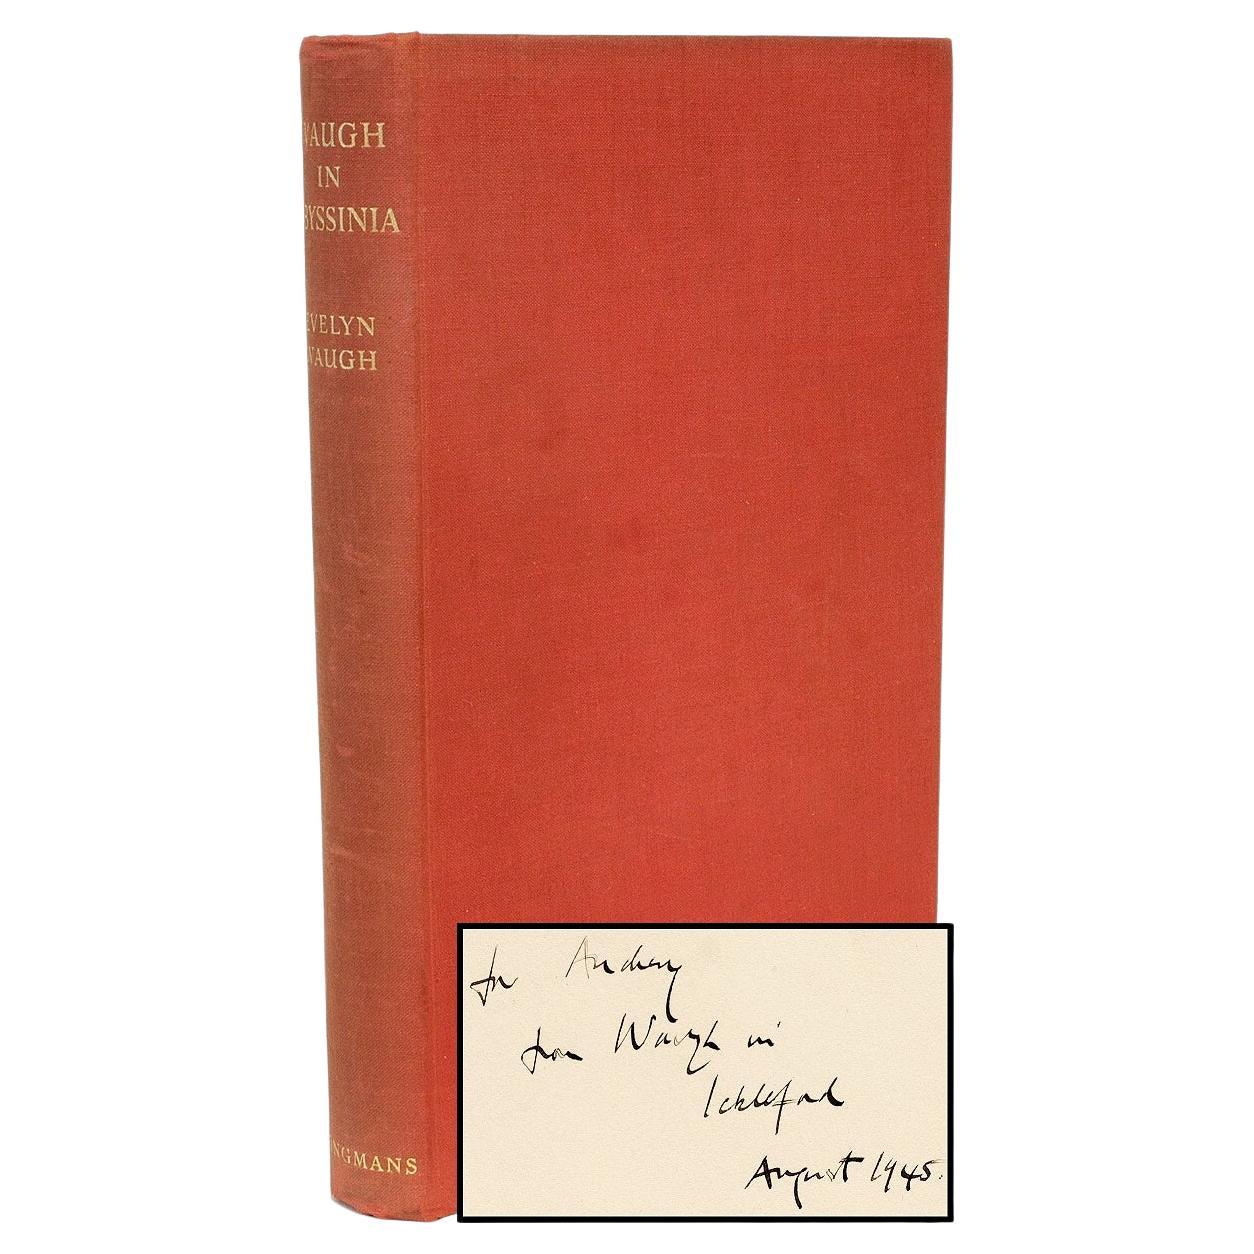 Waugh, Evelyn, Waugh in Abyssinia, première édition, copie de présentation, 1936